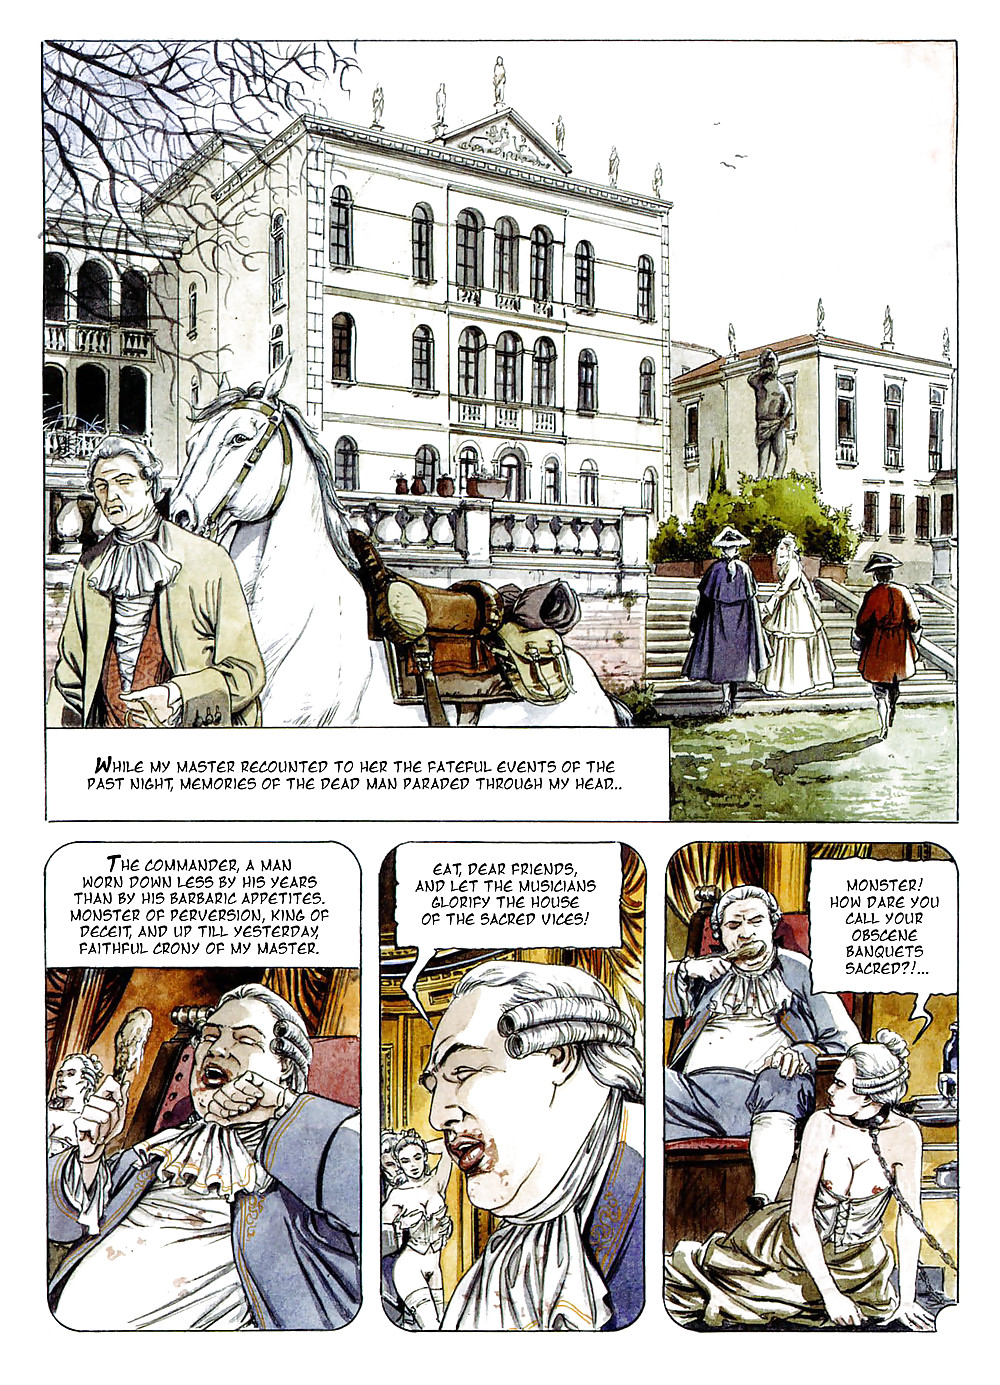 エロティックコミックアート14 - ドン・ジョバンニ
 #17531152